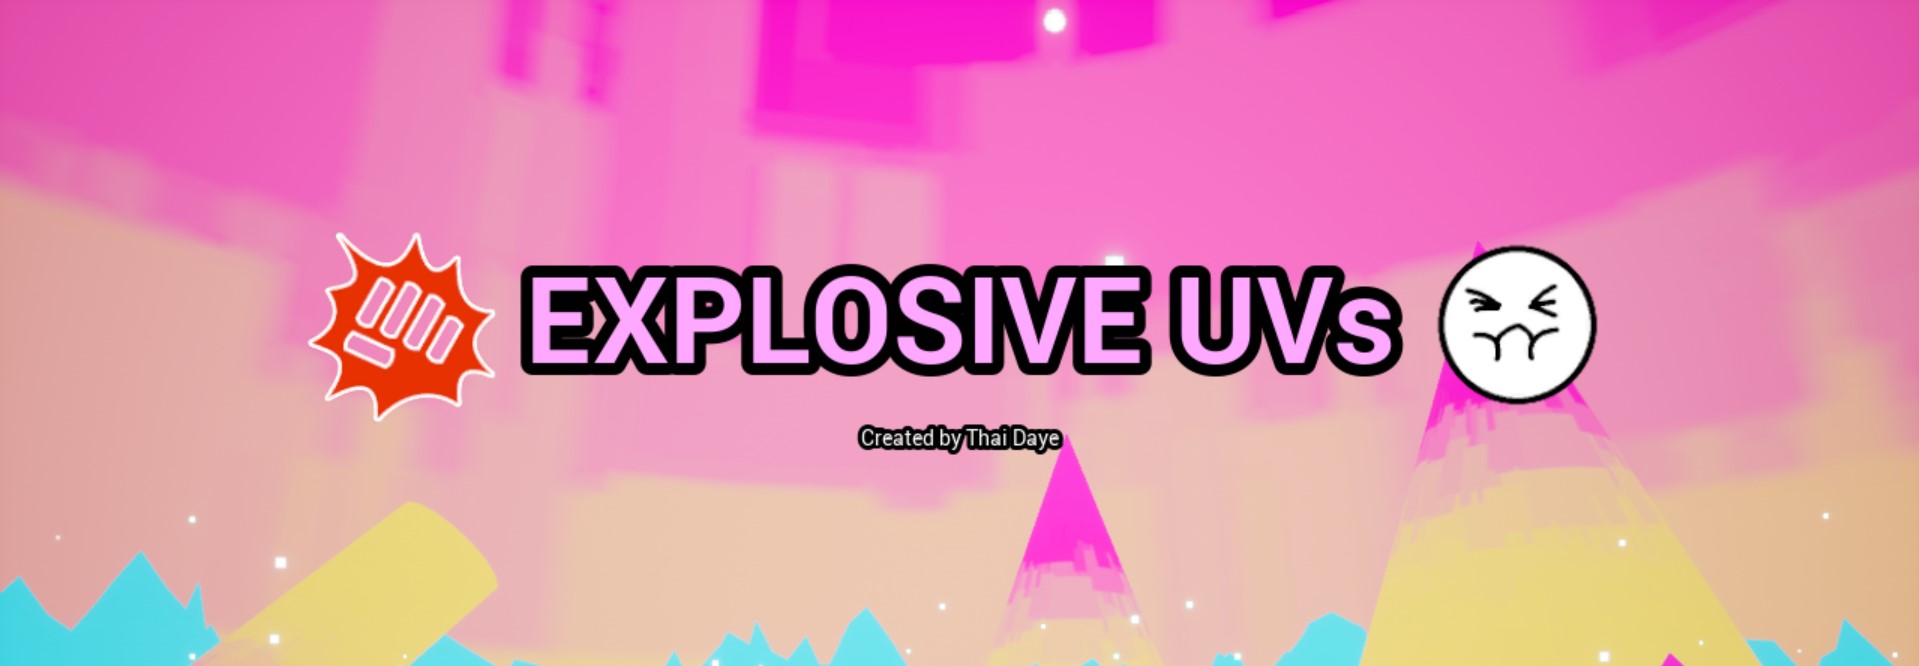 Explosive UVs